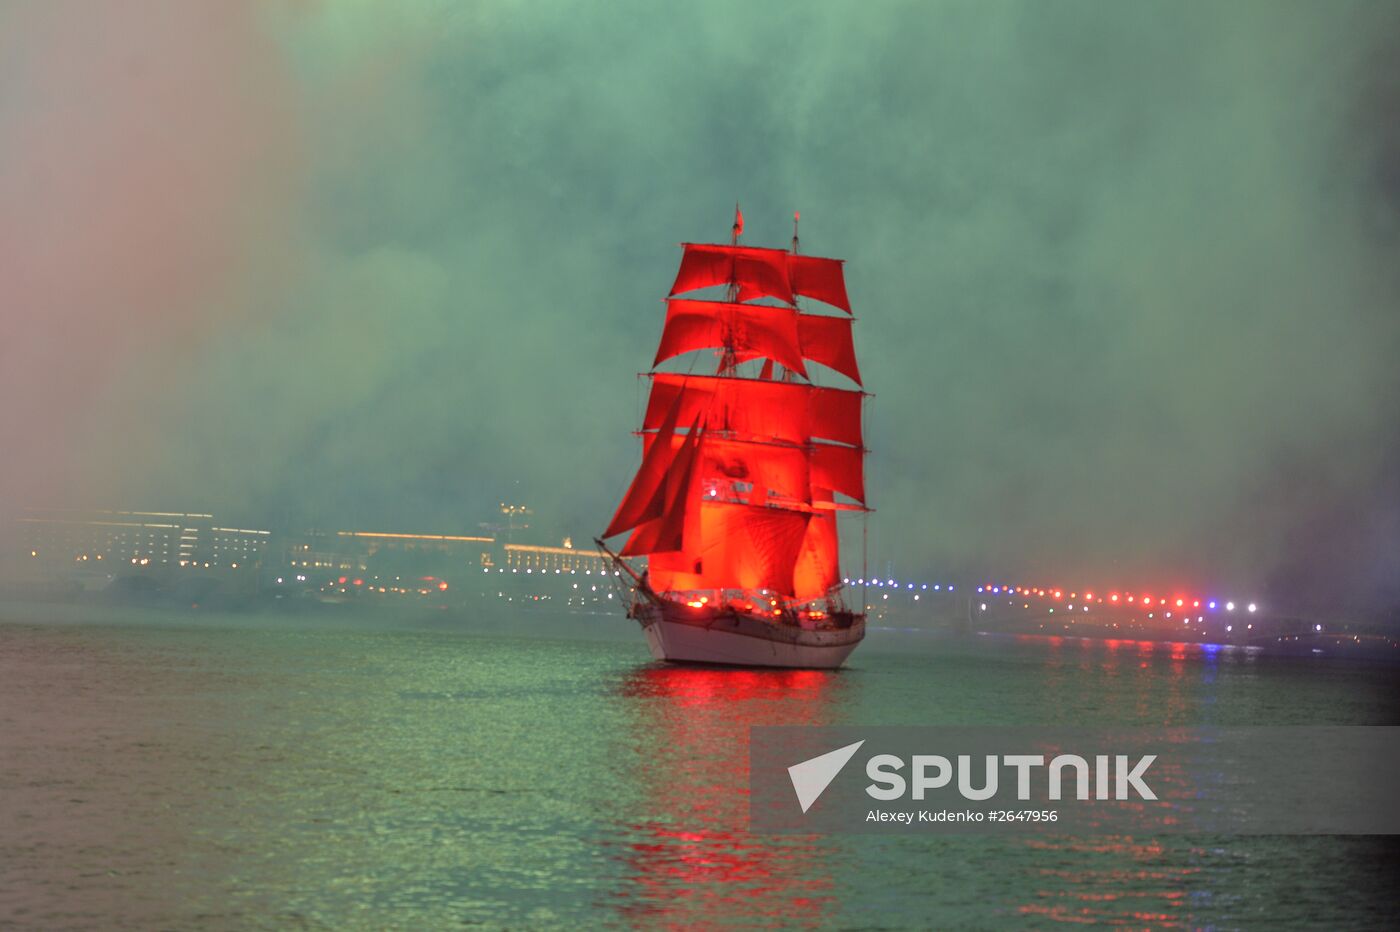 Scarlet Sails school-leavers' festival in St. Petersburg as part of SPEIF 2015